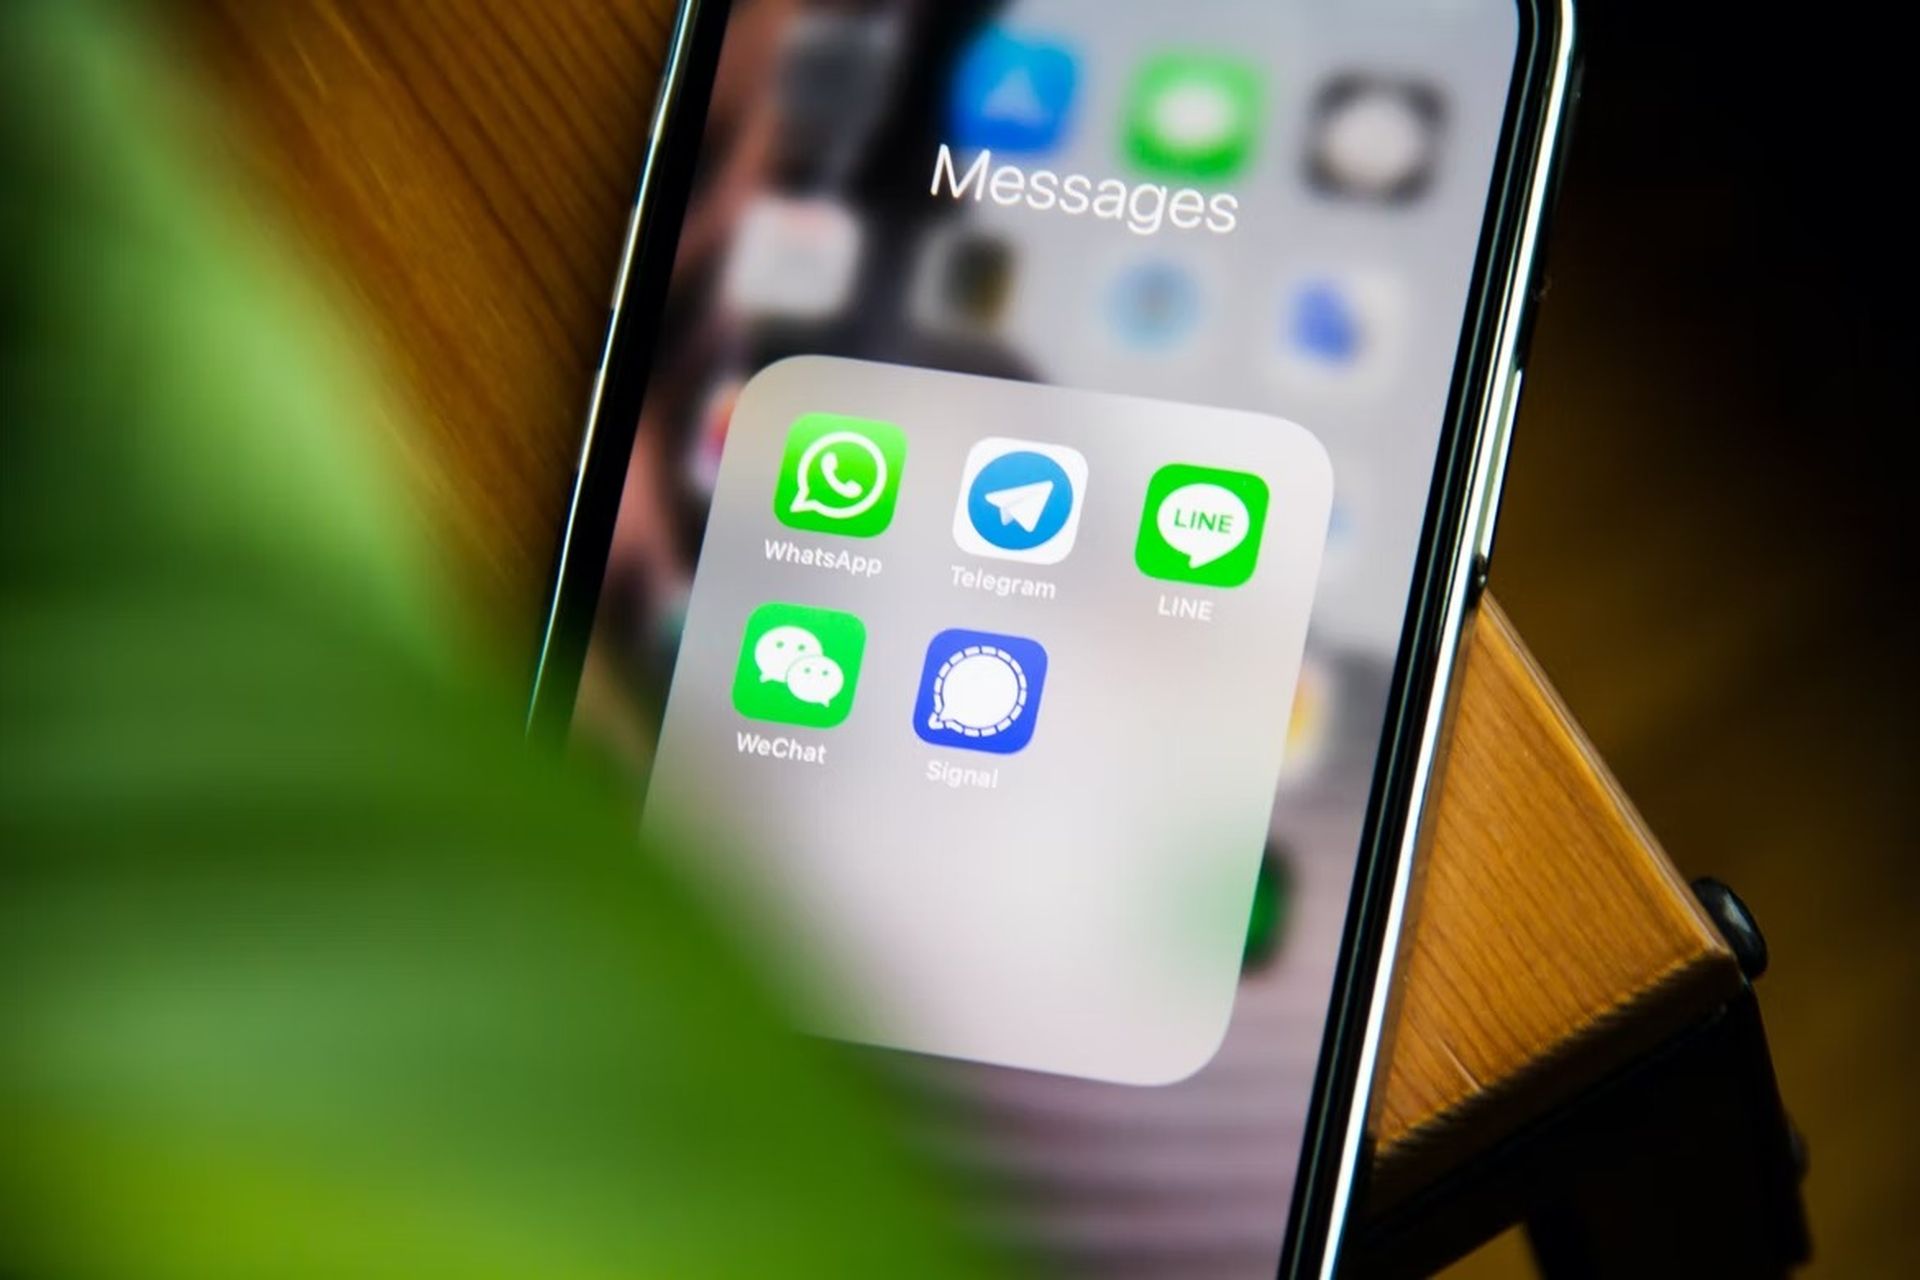 WhatsApp zakończy wsparcie dla iOS 10 i iOS 11 do końca 2022 roku. Nowe ostrzeżenie odkryte przez WABetaInfo zachęca użytkowników iPhone'a do uaktualnienia oprogramowania i dalszego korzystania z WhatsApp po 24 października.